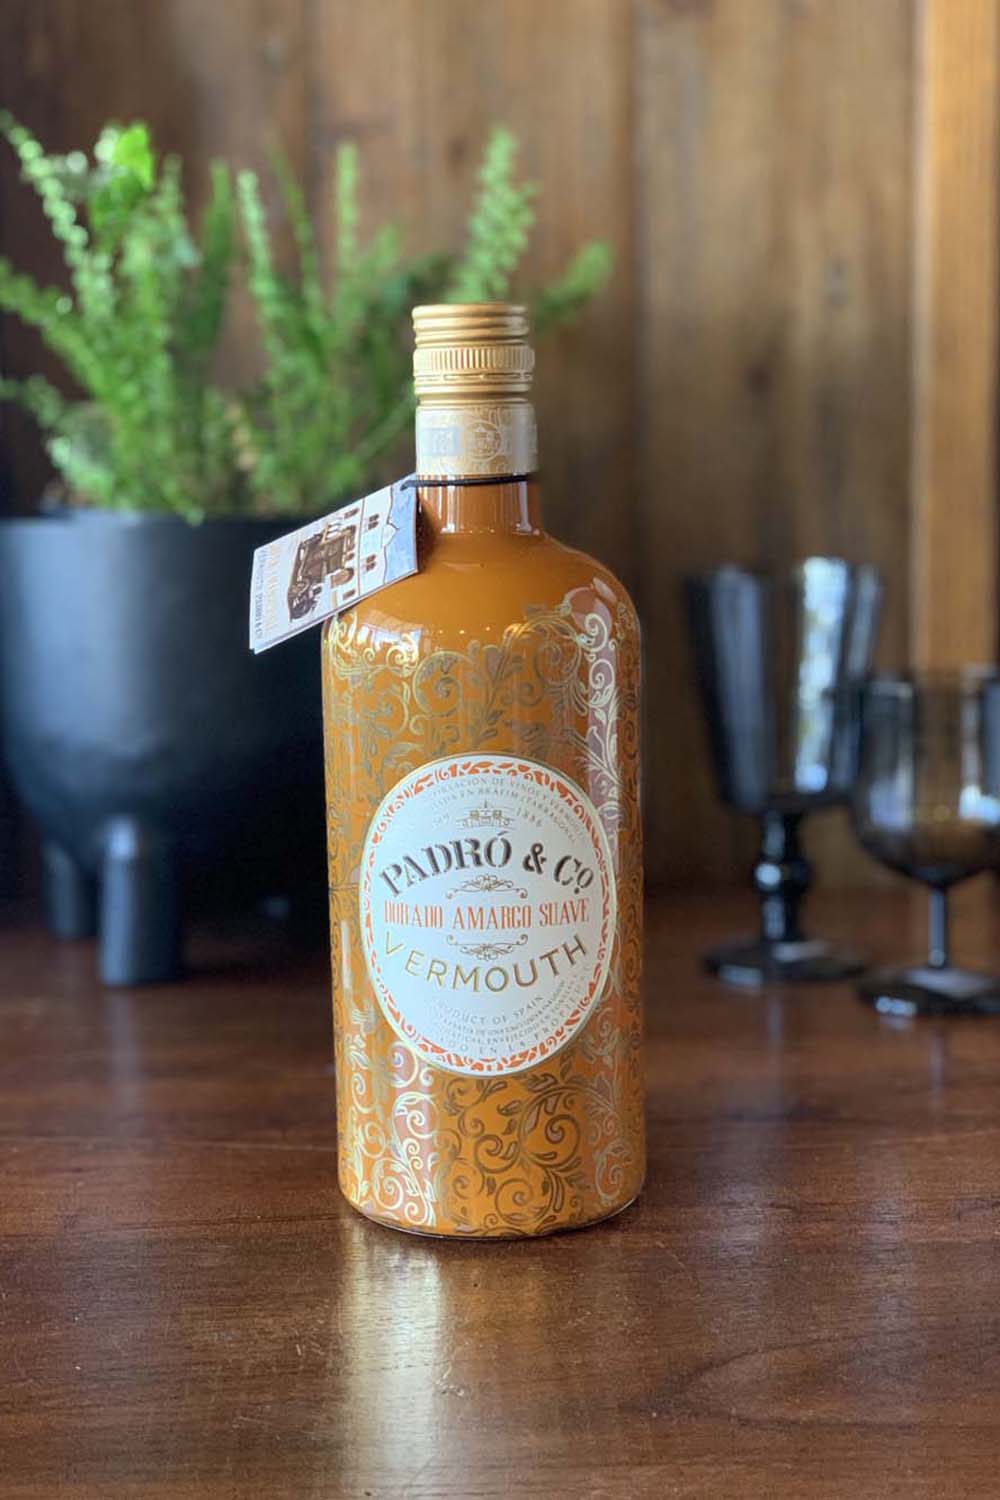 Padro & Co Vermouth Dorado Amargo Suave